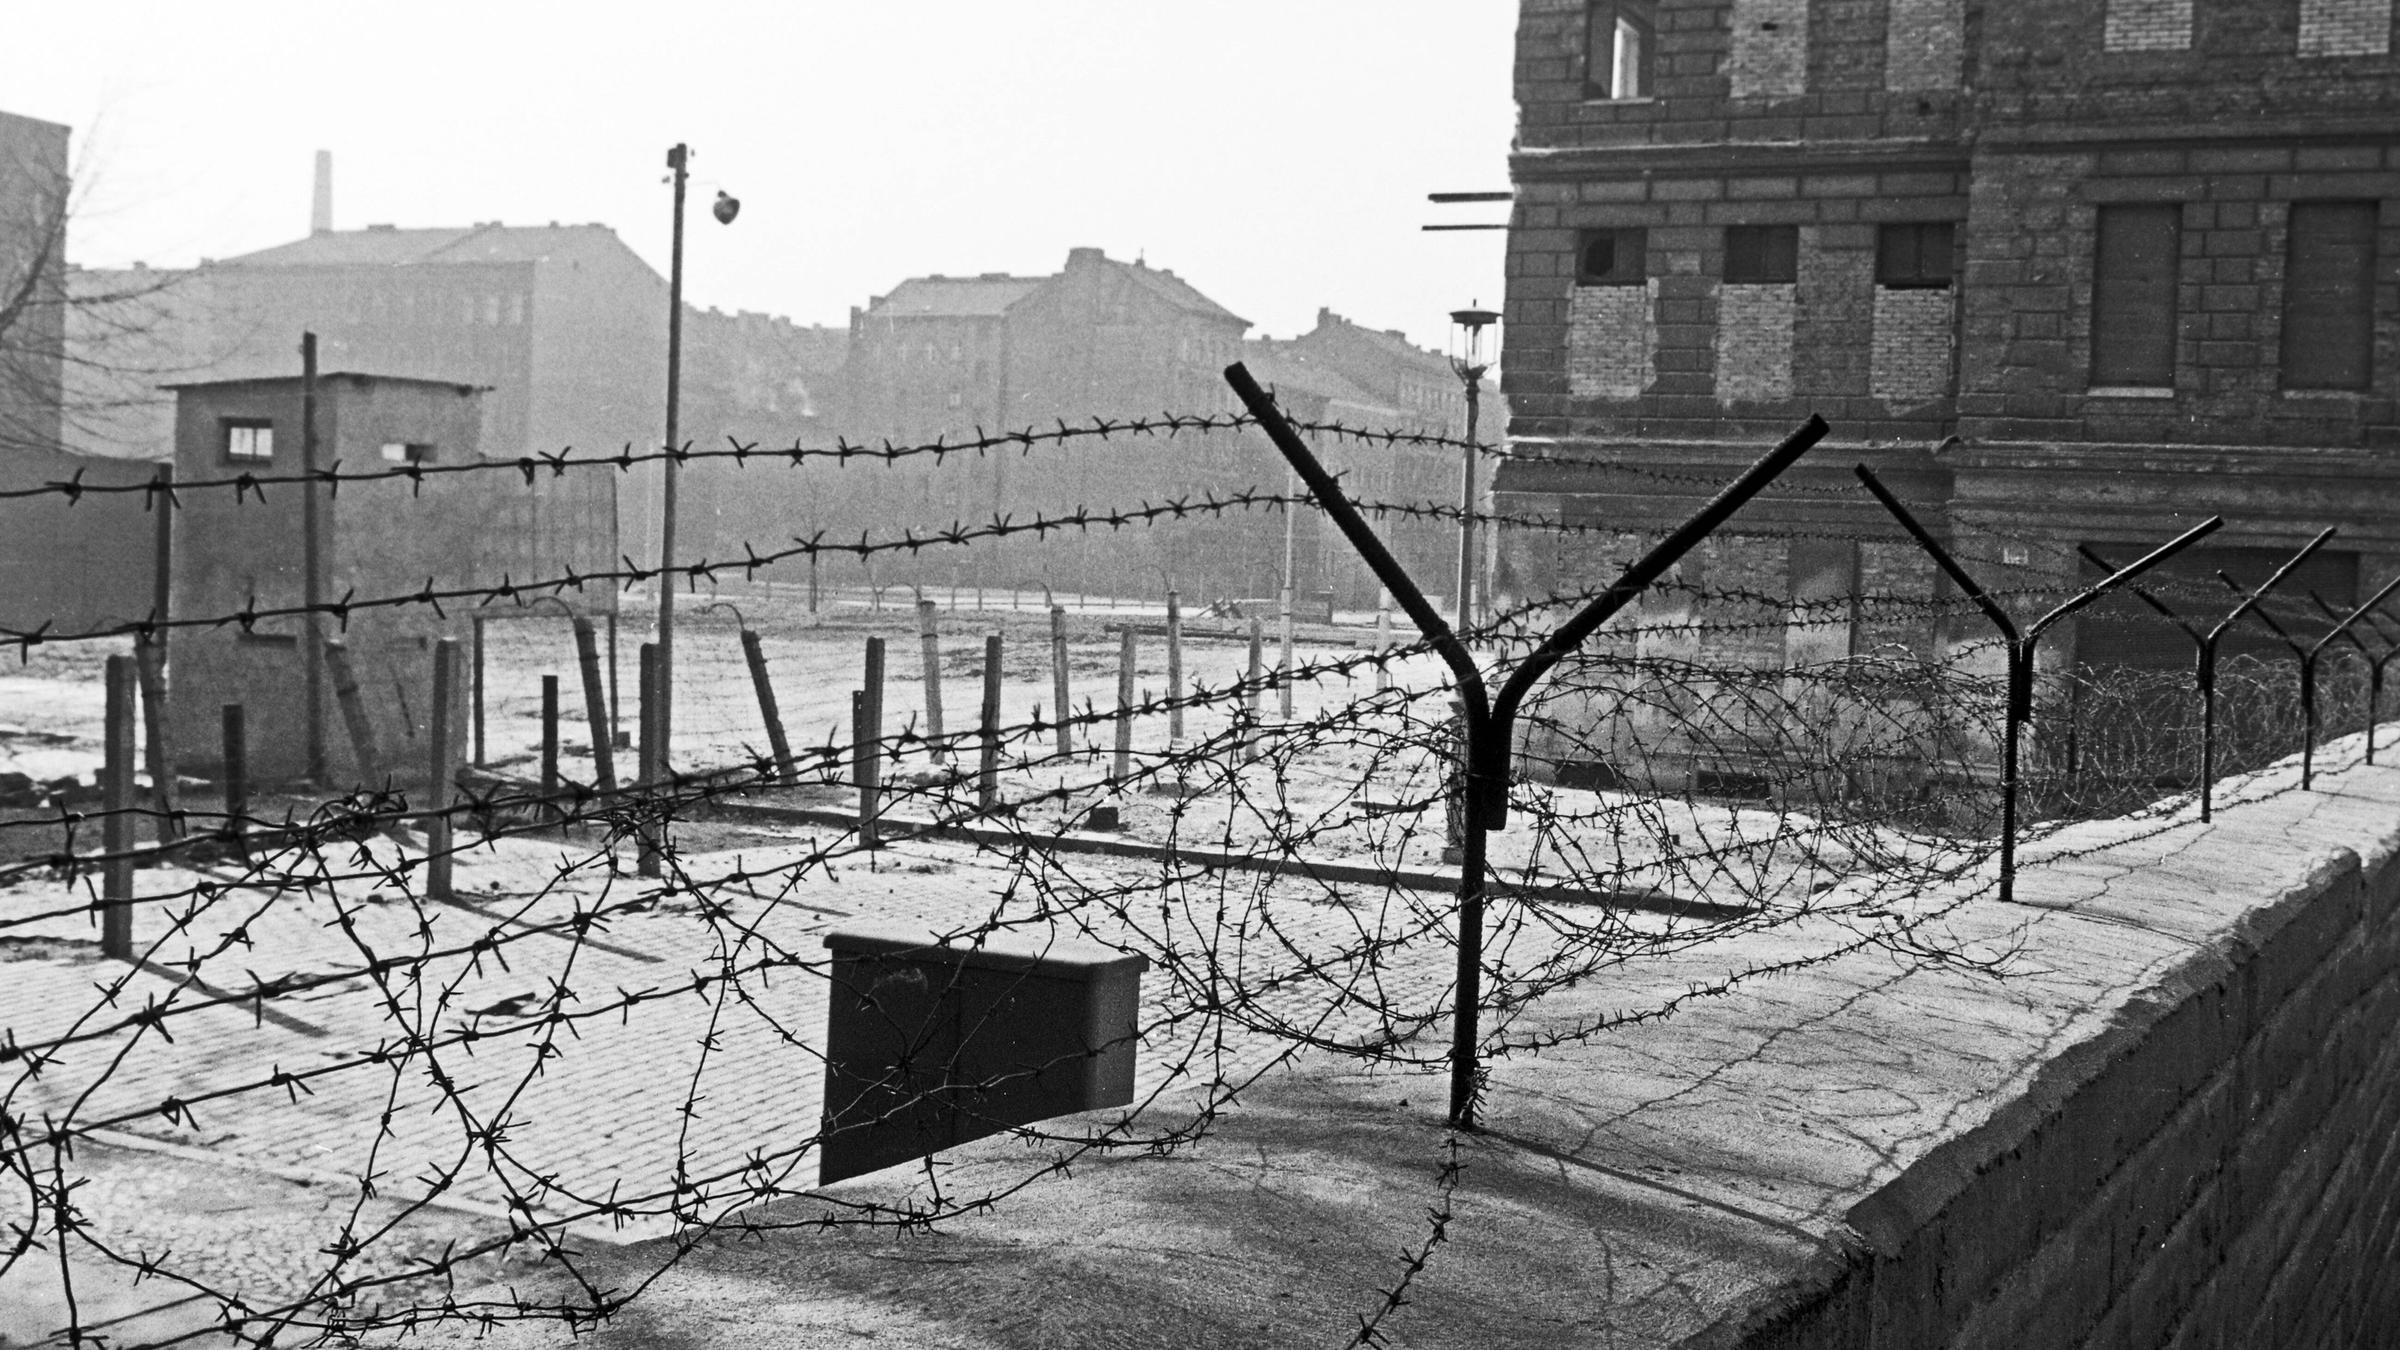 Berlin Mauer und Grenzanlagen in der Nähe der Bernauer Straße in Berlin...</p>

                        <a href=